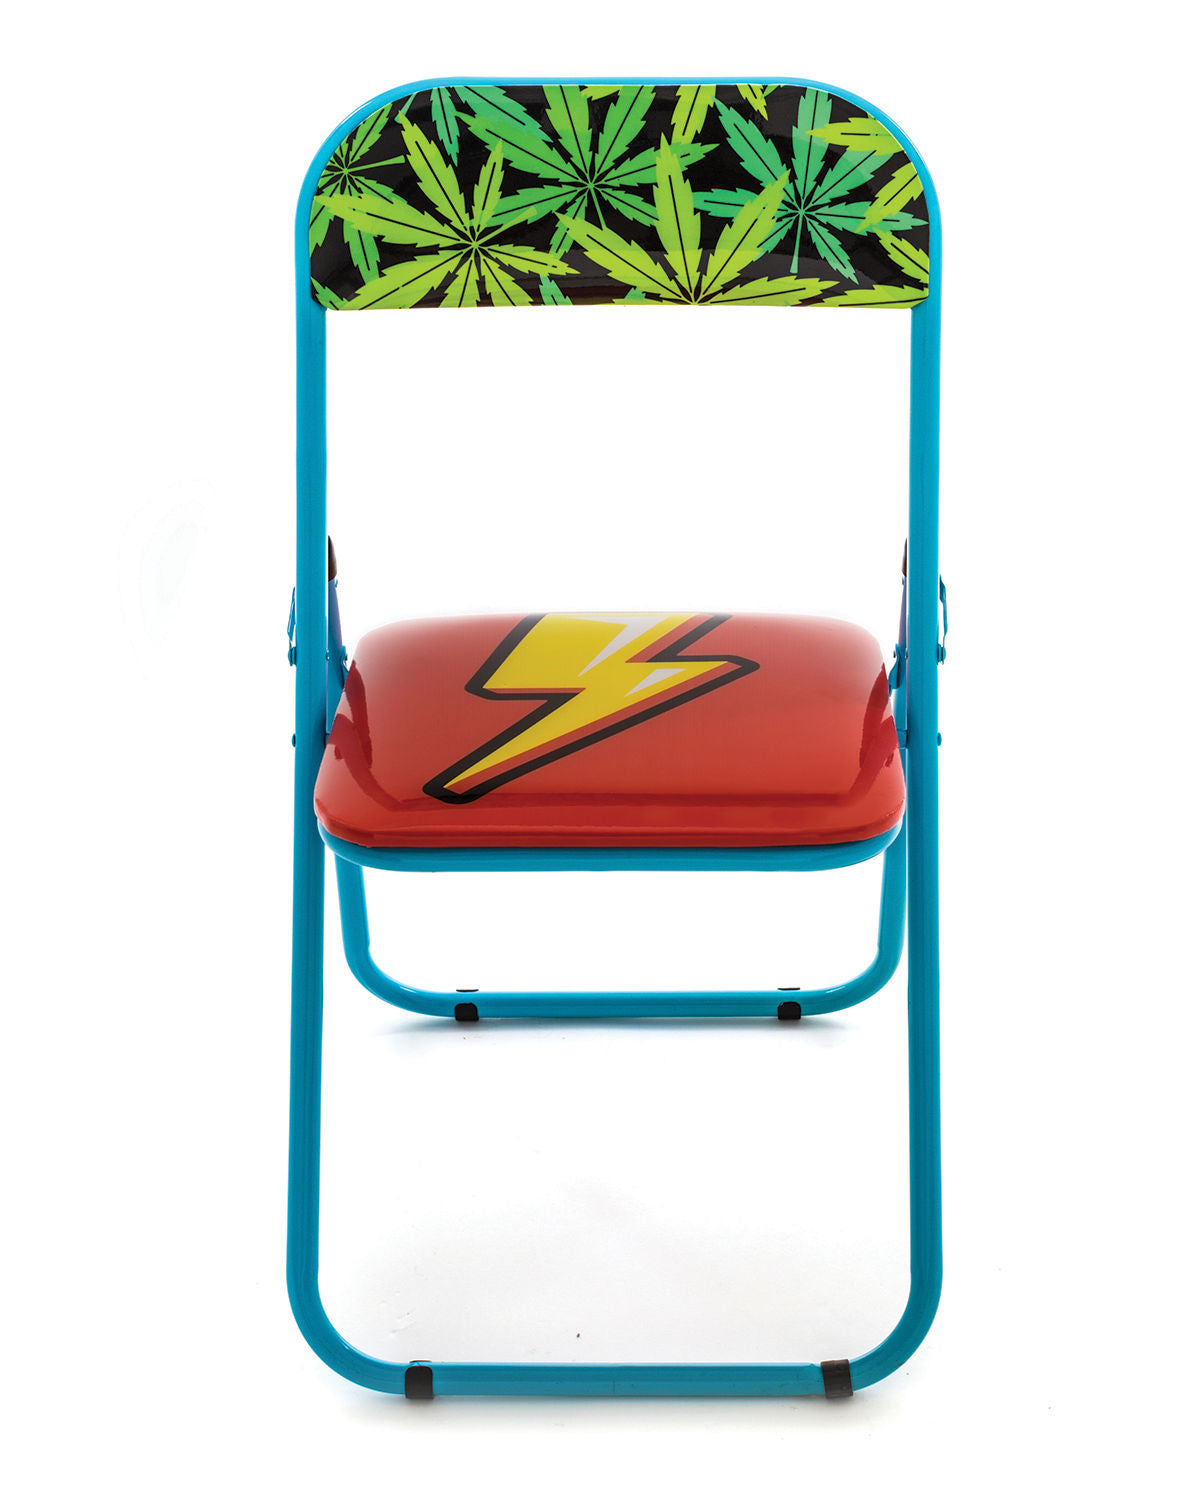 Metal Folding Chair Seletti, Flash